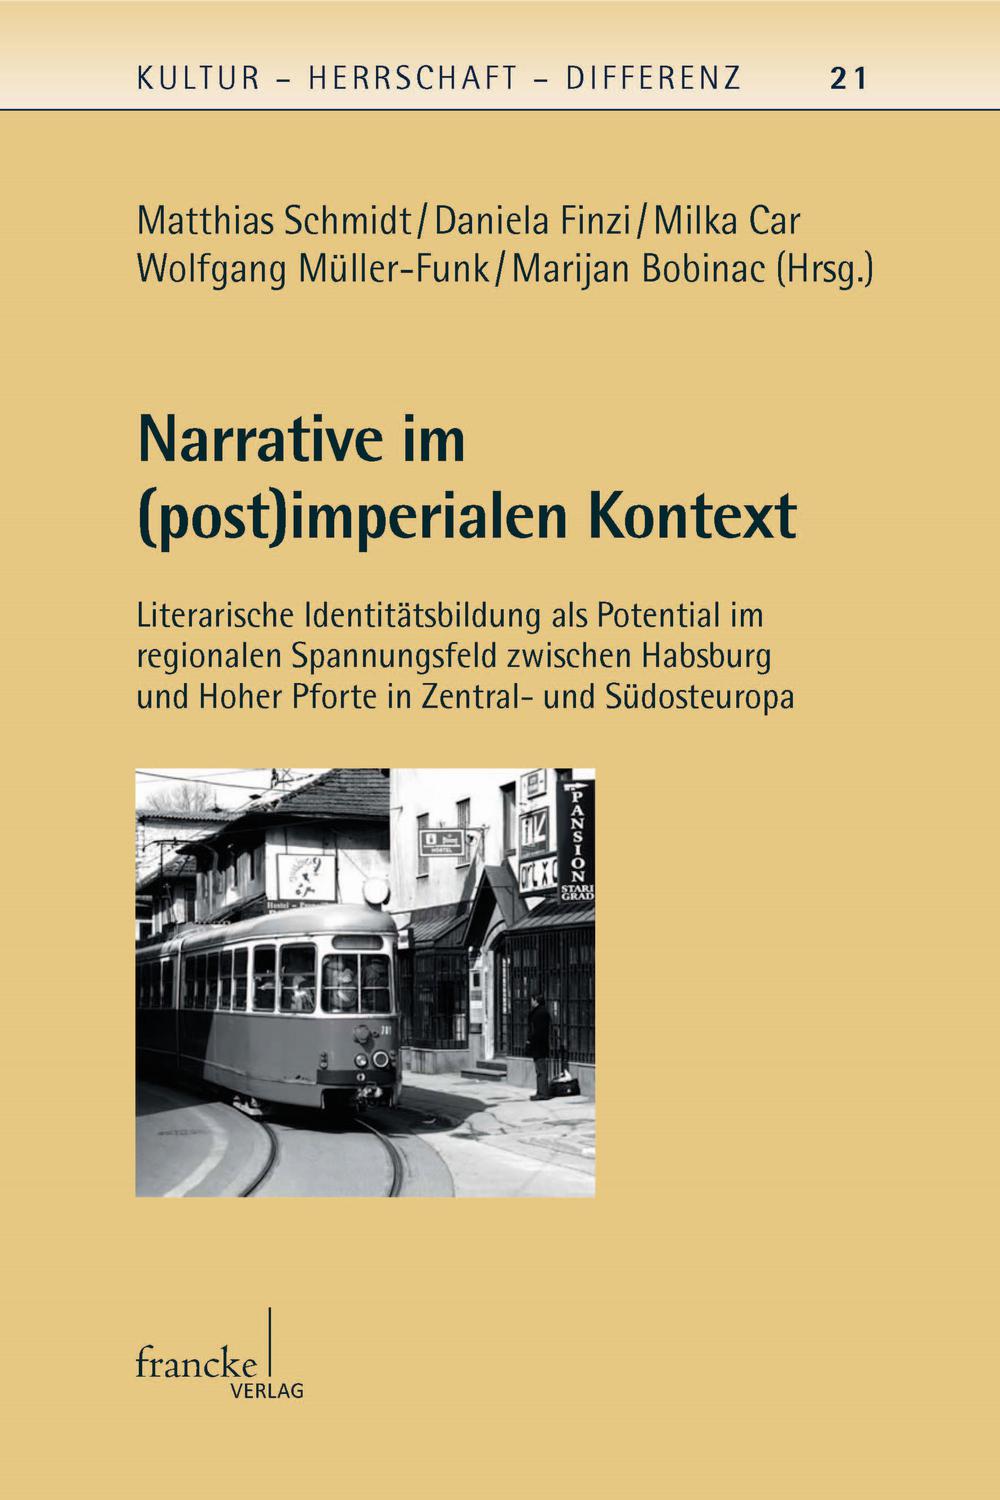 Narrative im (post)imperialen Kontext - Matthias Schmidt, Daniela Finzi, Milka Car, Wolfgang Müller-Funk, Marijan Bobinac